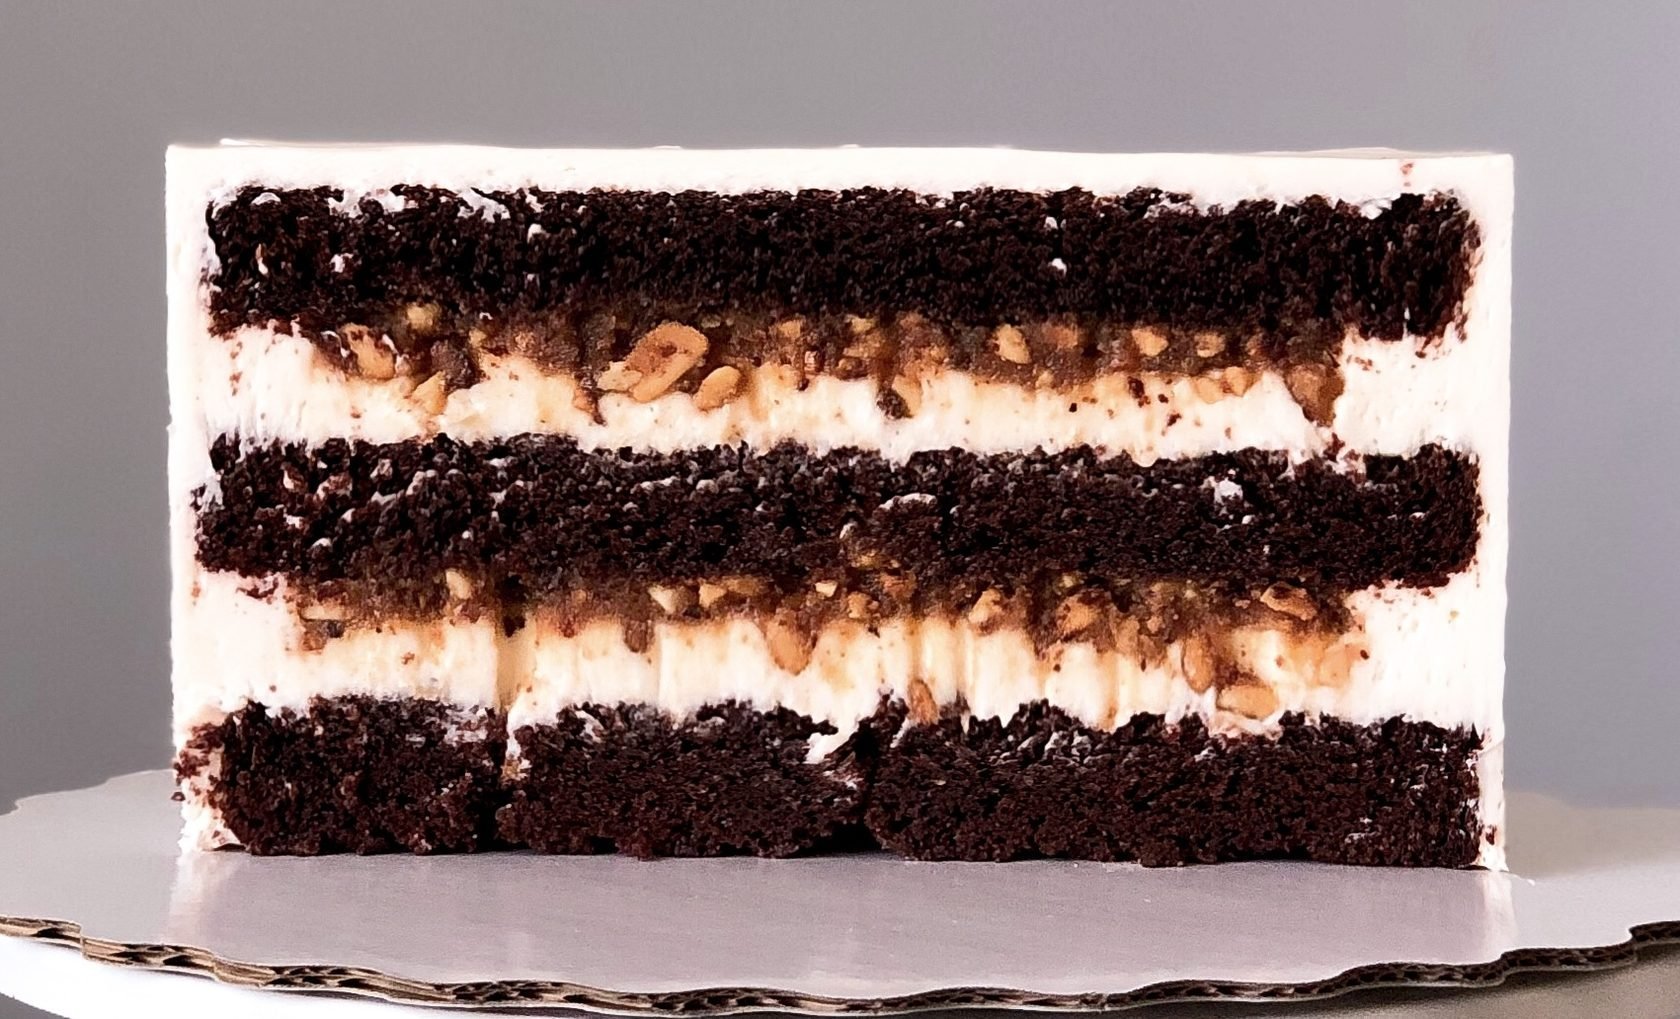 Начинки торта фото. Торт Сникерс с кремом чиз. Торт шоколадный бисквит с кремом чиз. Шоколадный торт Сникерс Лучано.